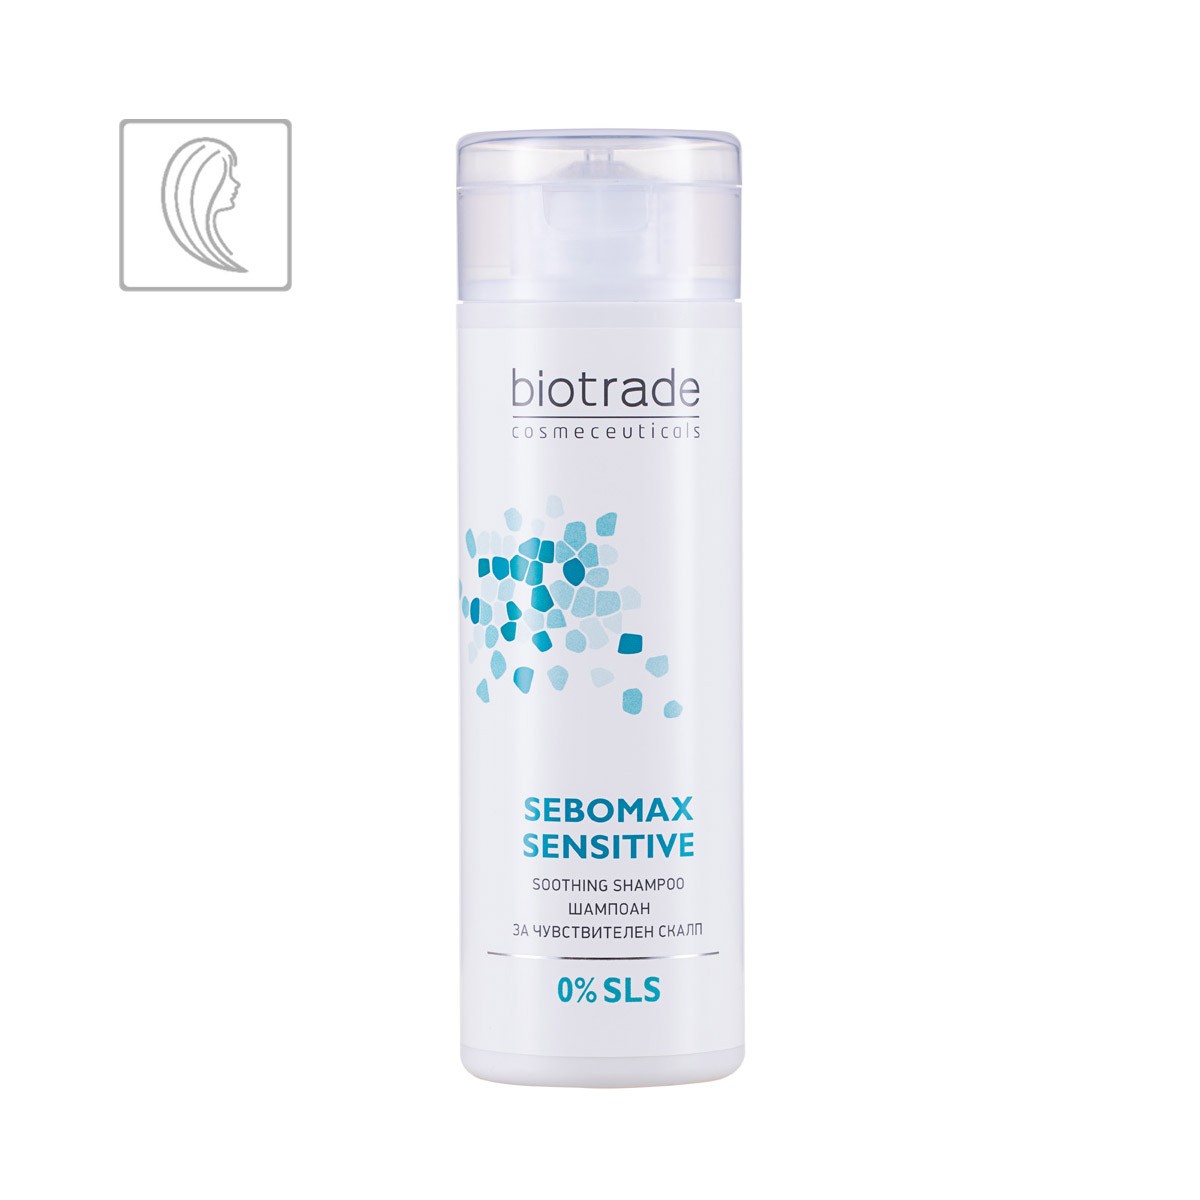 Sebomax Sensitive Soothing Shampoo Biotrade zklidňující šampon na vlasy pro citlivou pokožku